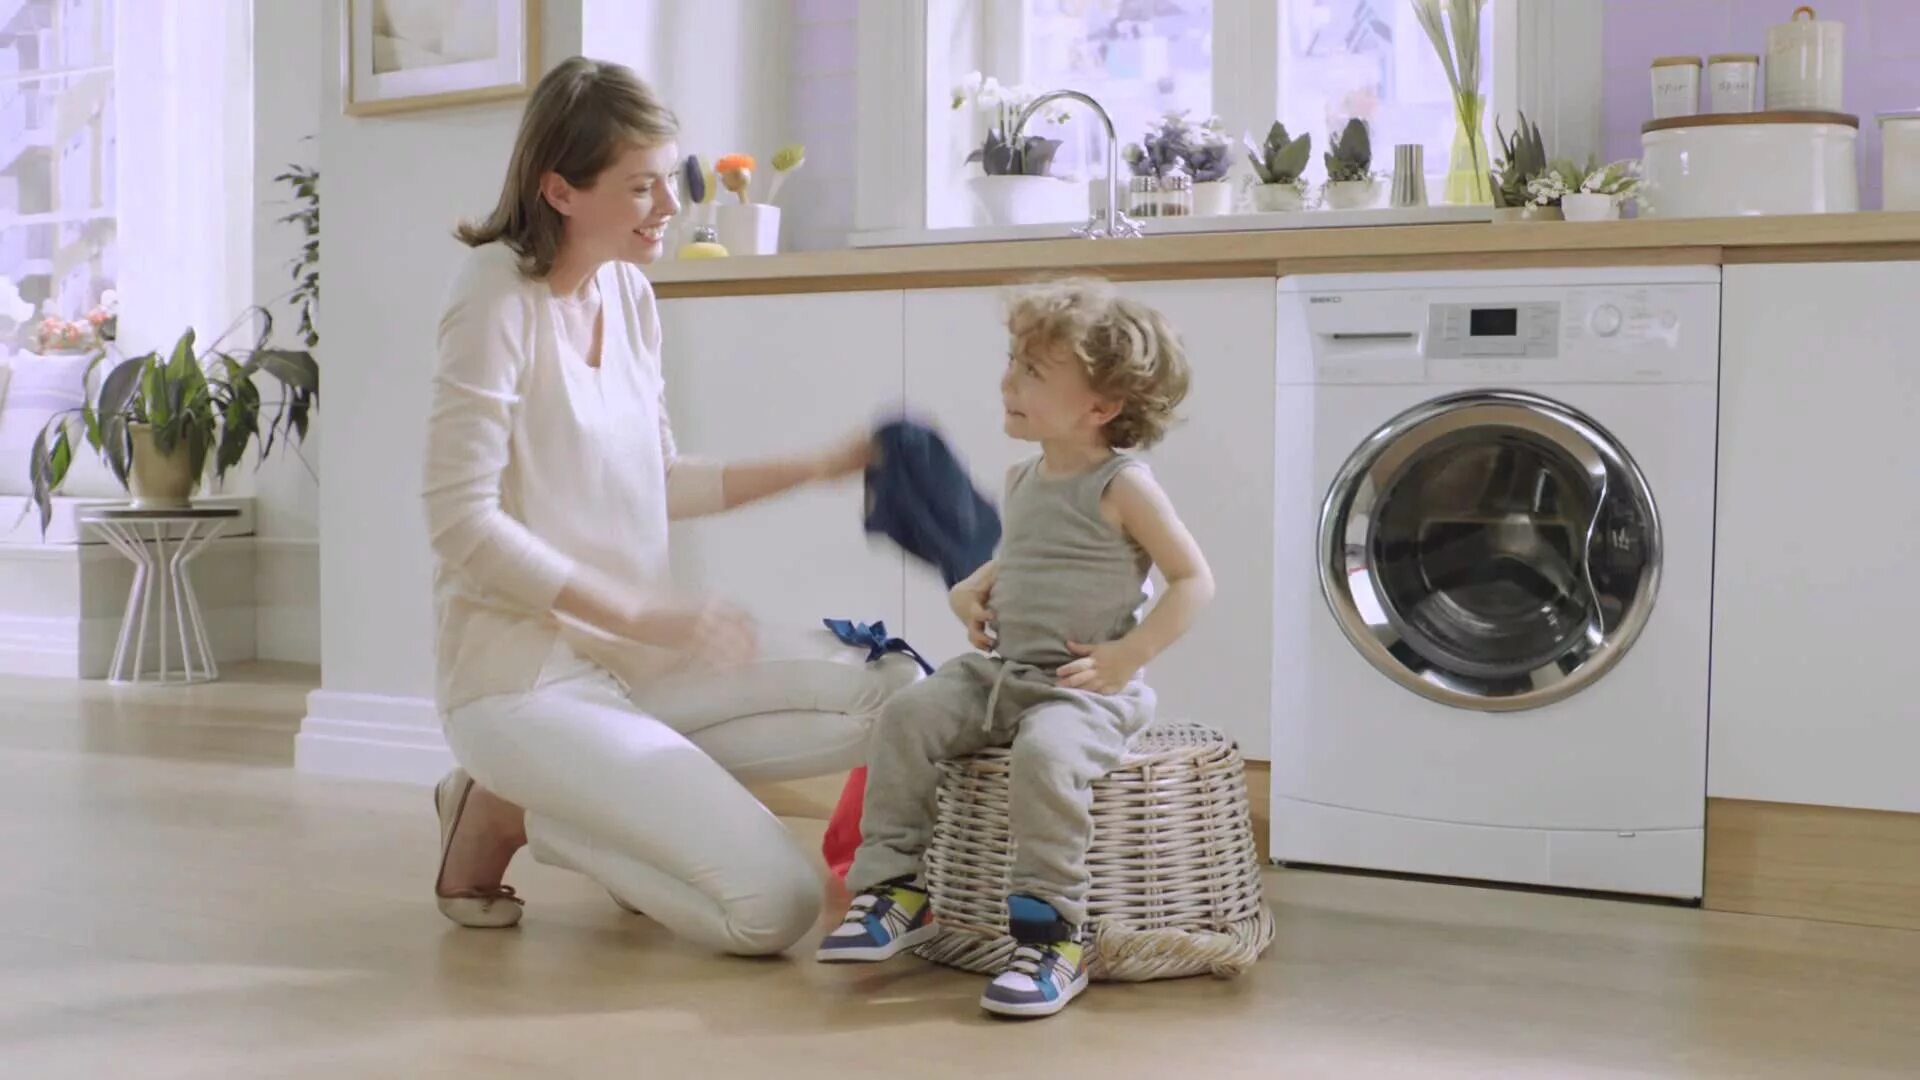 Стиральная машинка загадка. Реклама стиральной машины. Стиральная машина для детей. Стиральная машина в интерьере. Мама и дочка стиральная машинка.